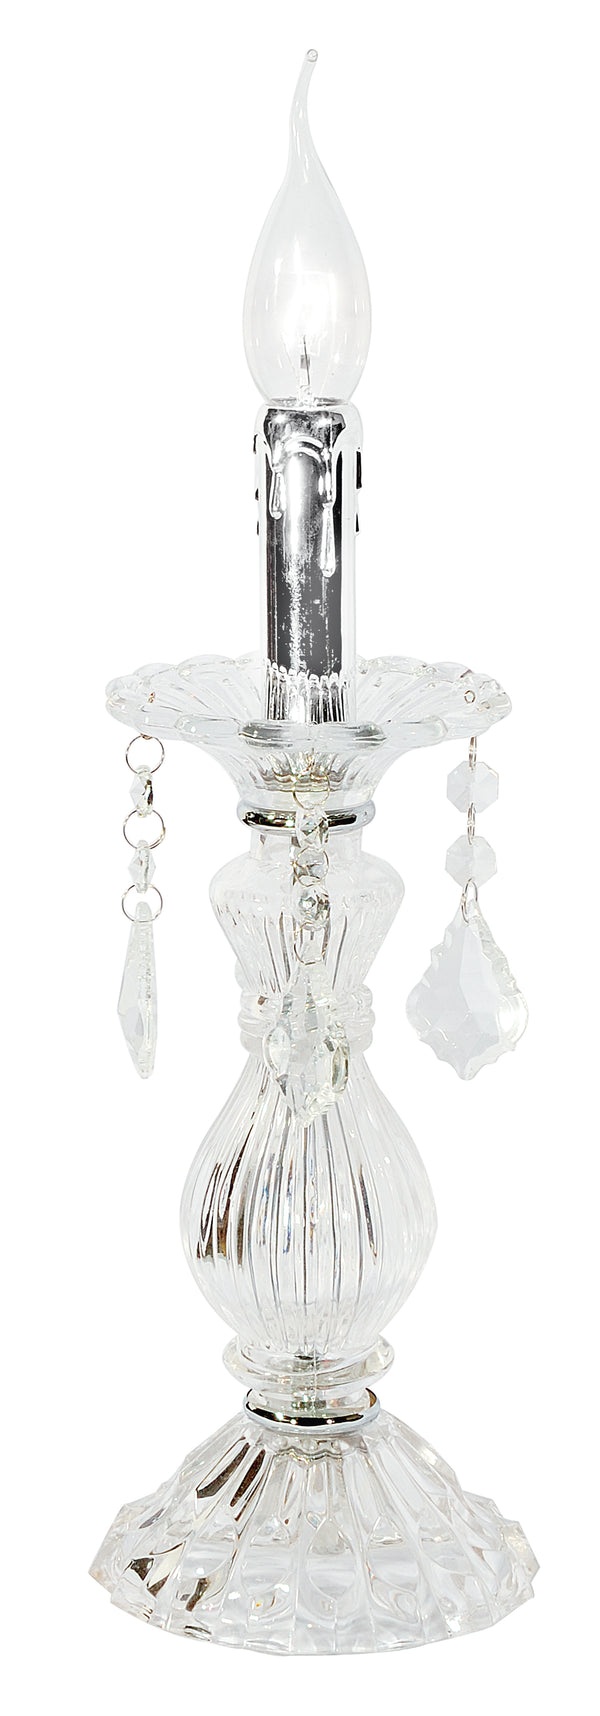 online Lume Glass Pendants K9 Kristalle Chrom-Finish Tischlampe E14 Ambient I-246/00300